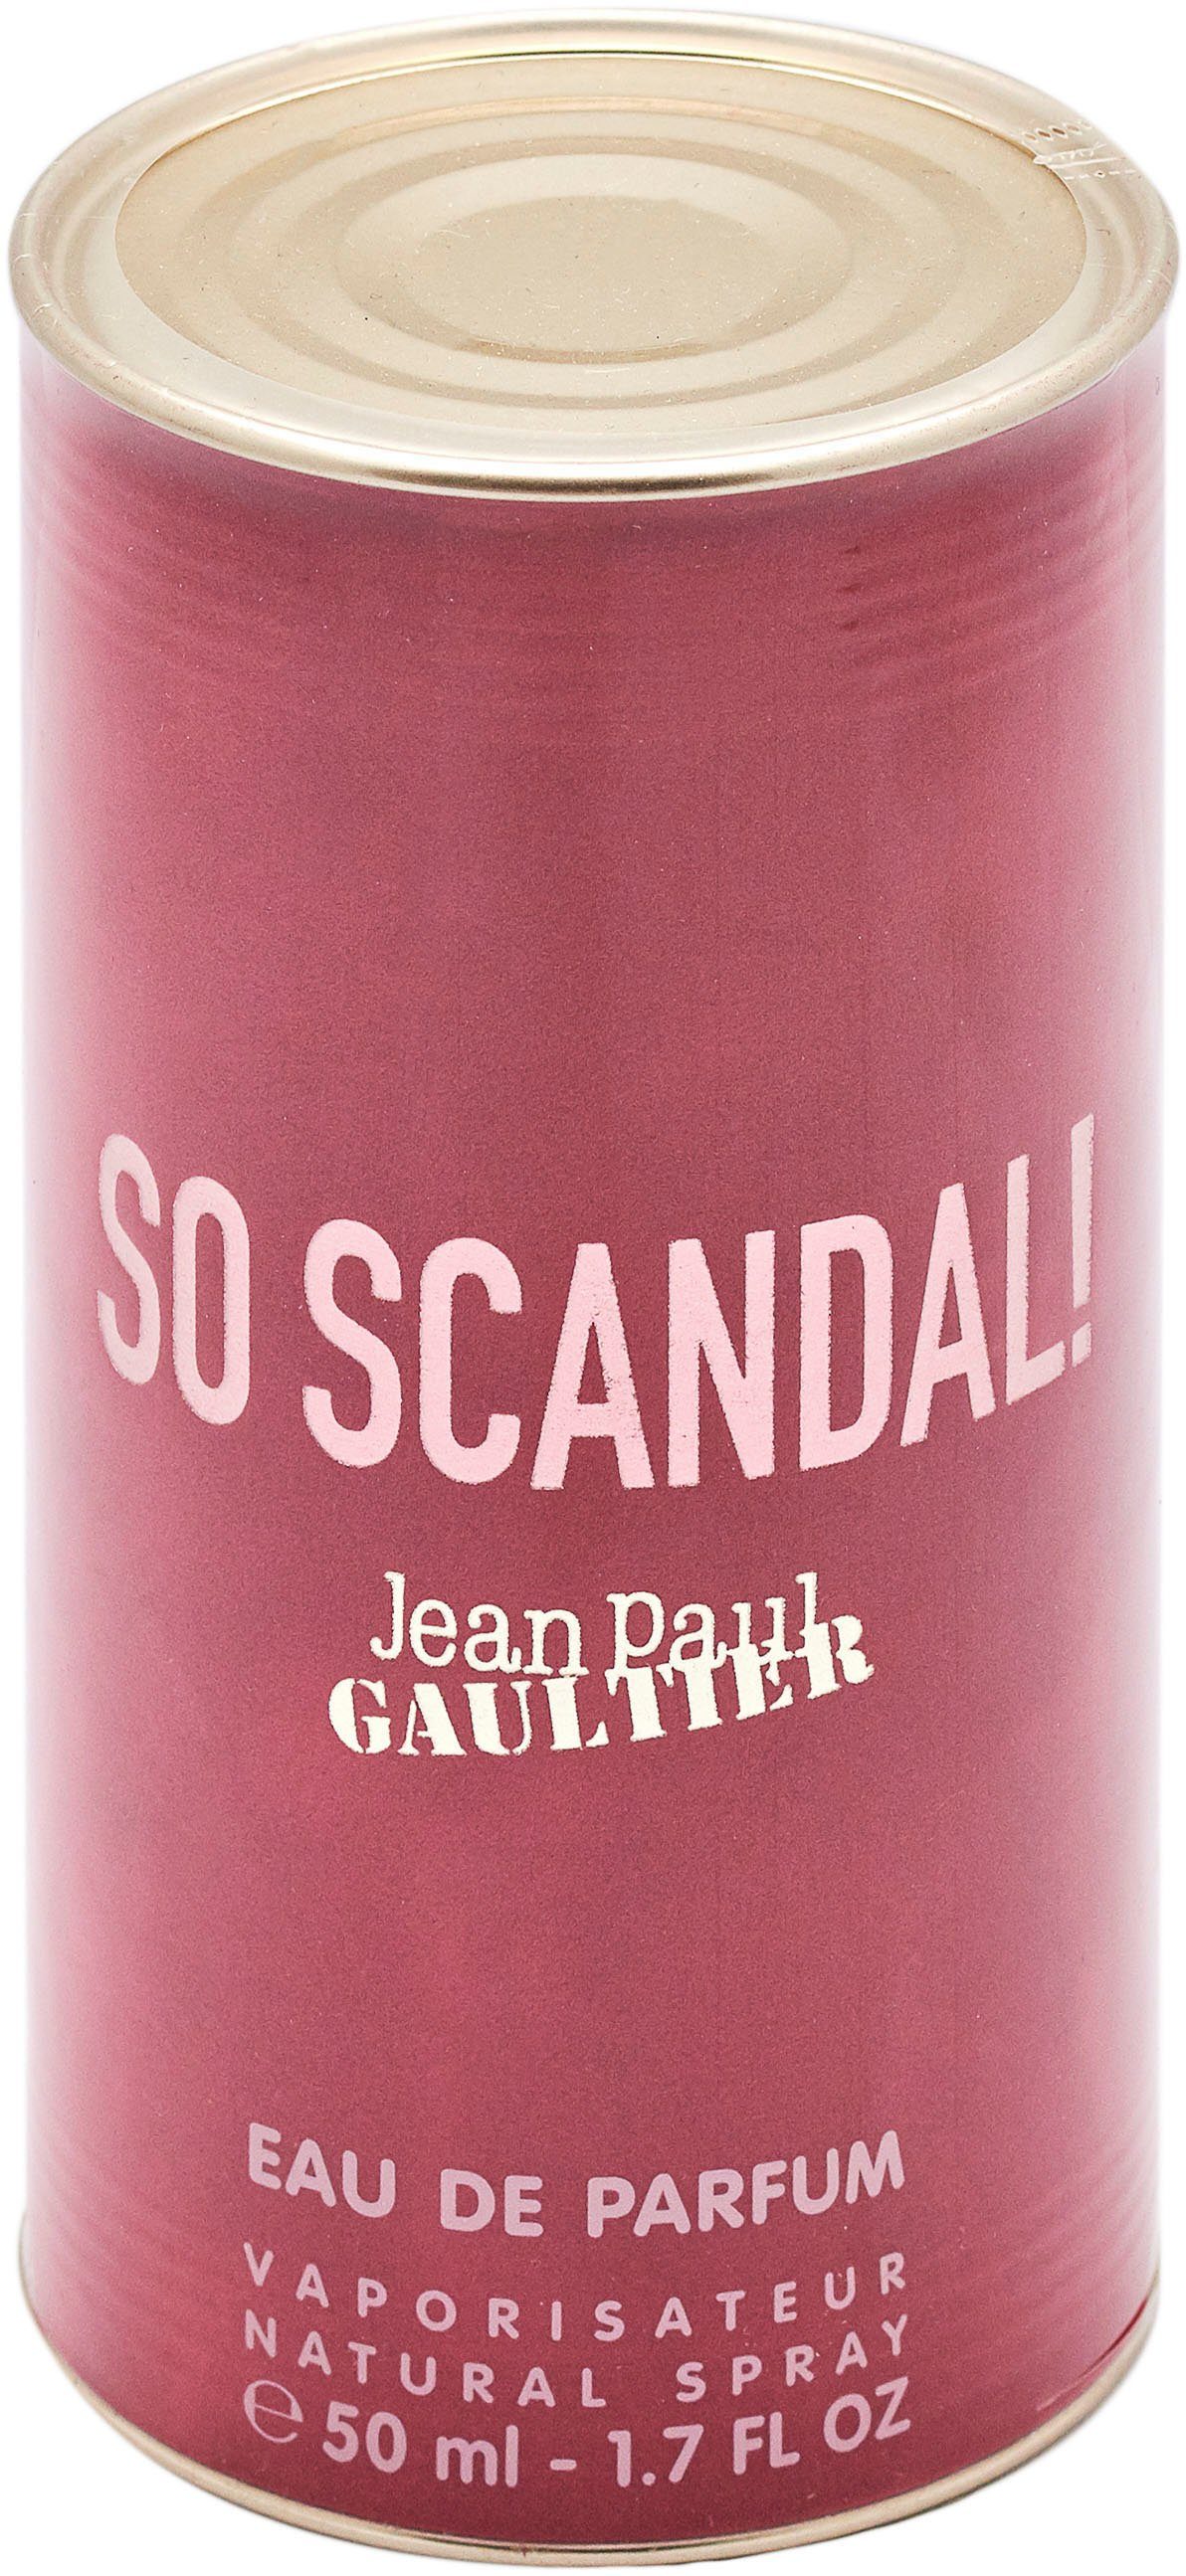 So Scandal! PAUL JEAN de Parfum GAULTIER Eau